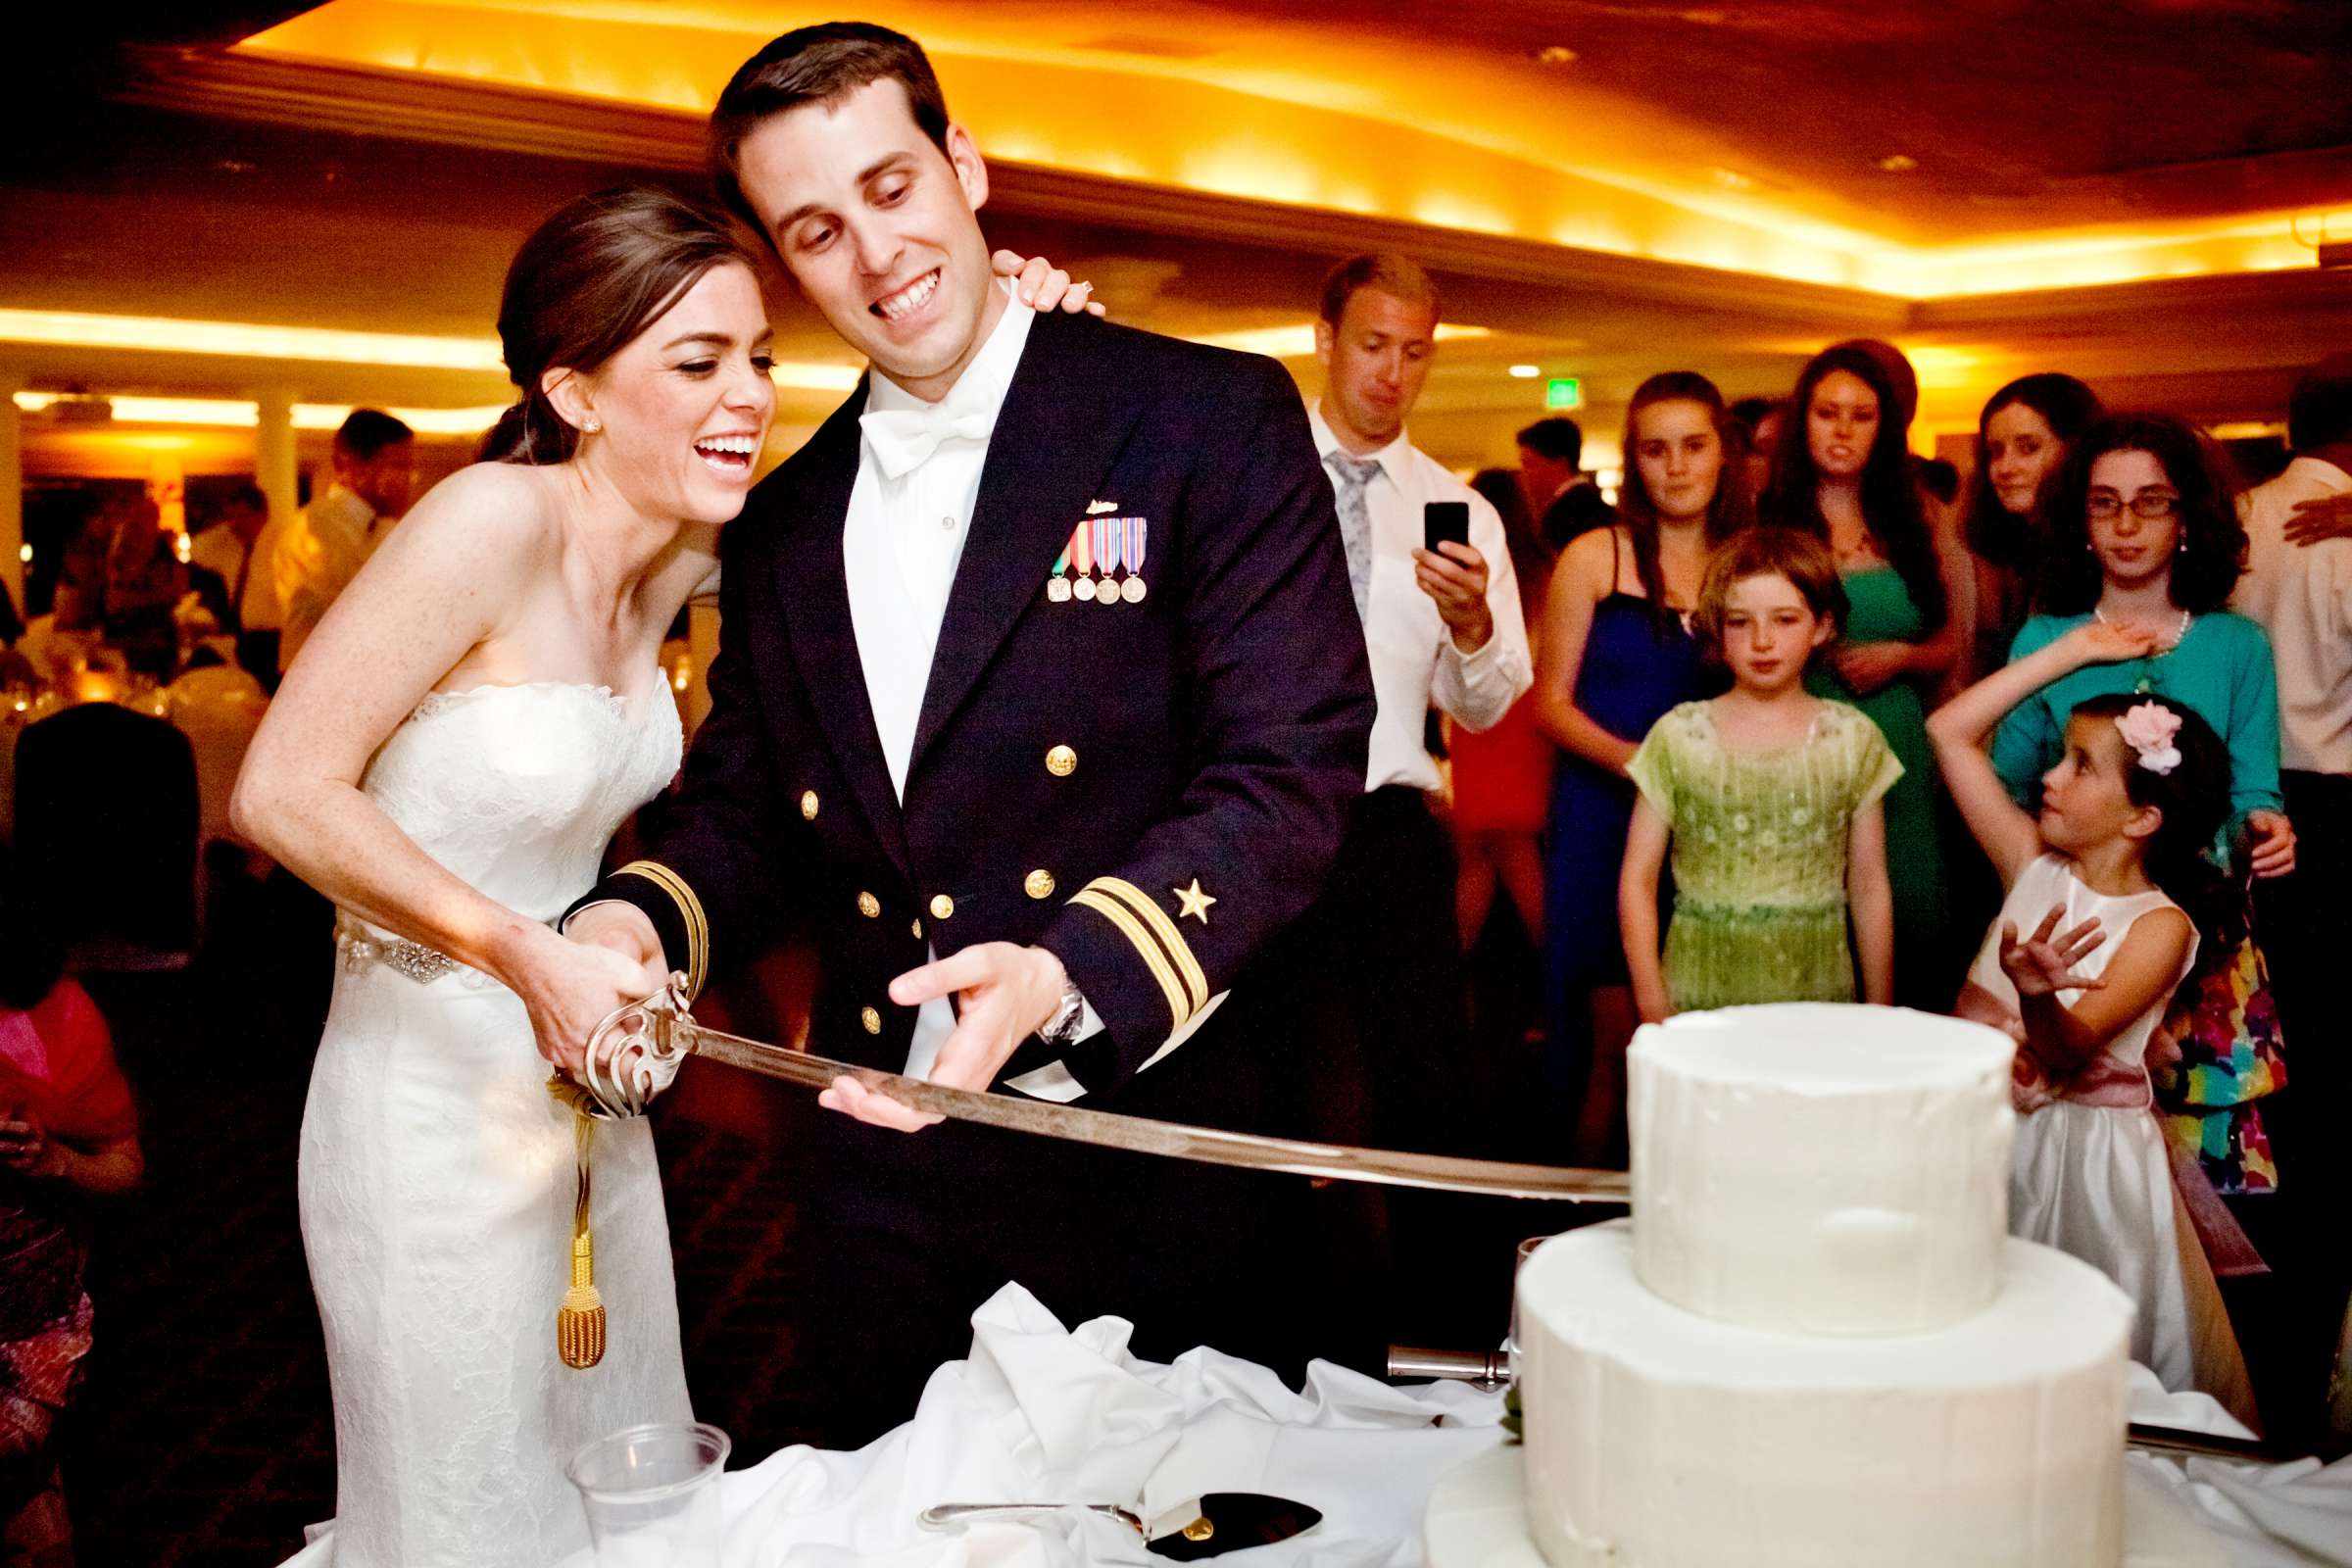 Admiral Kidd Club Wedding coordinated by I Do Weddings, Ashley and Rhett Wedding Photo #358499 by True Photography